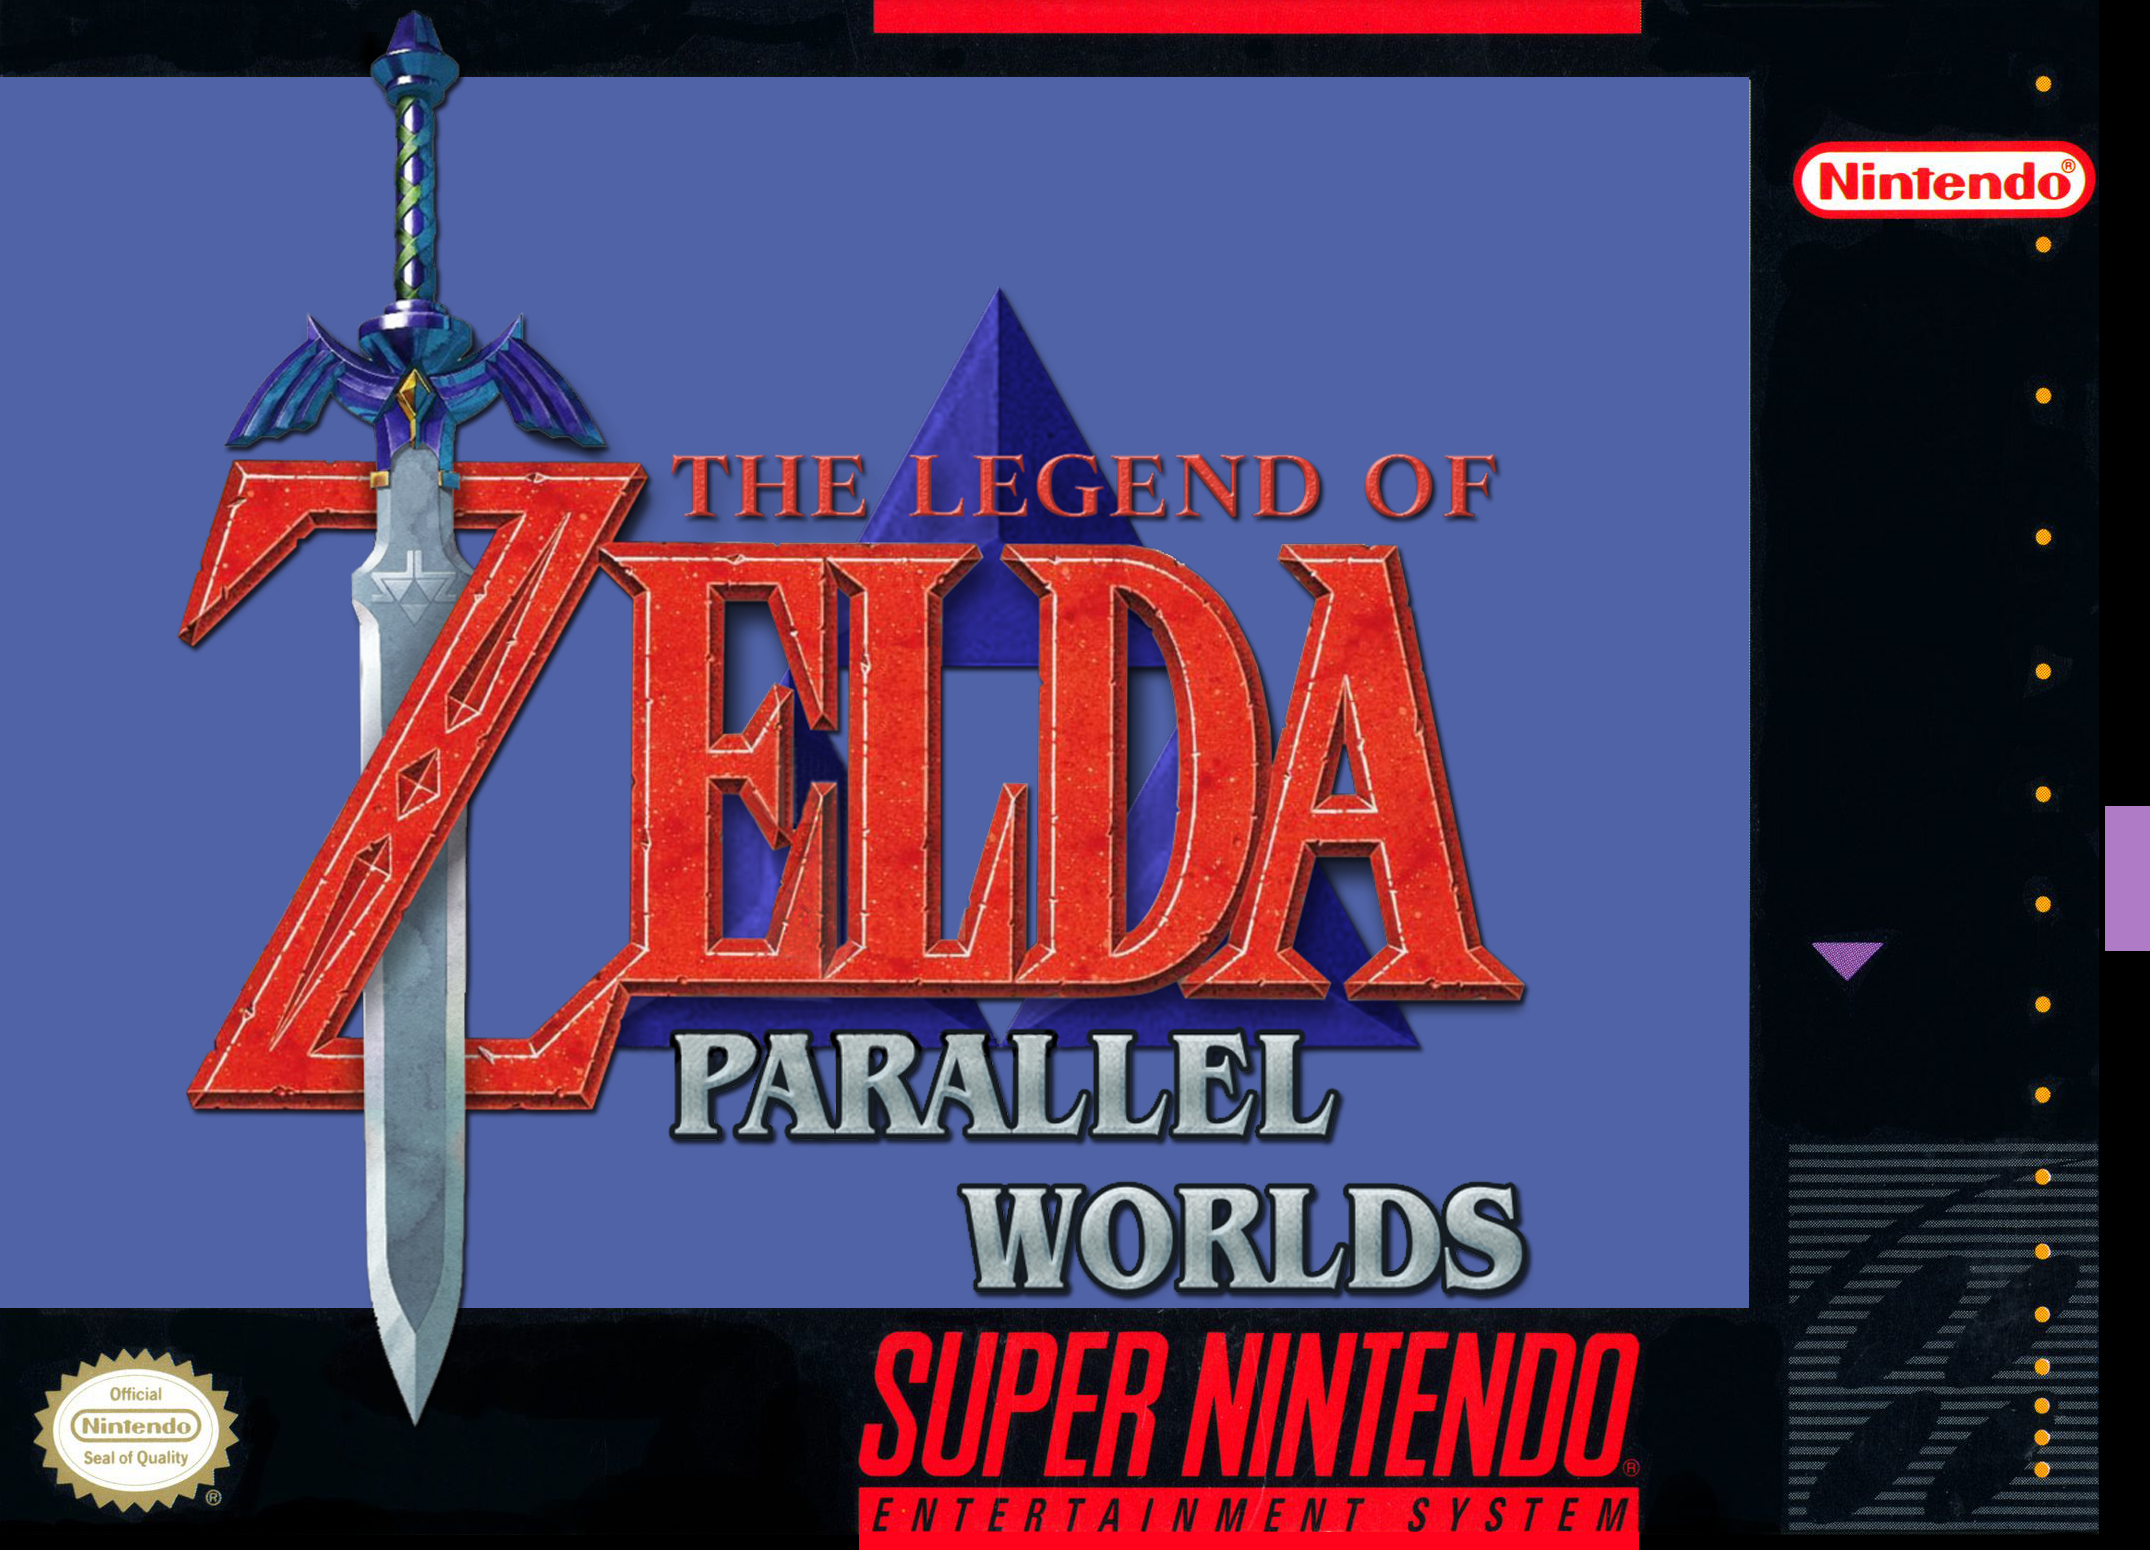 zelda parallel worlds download